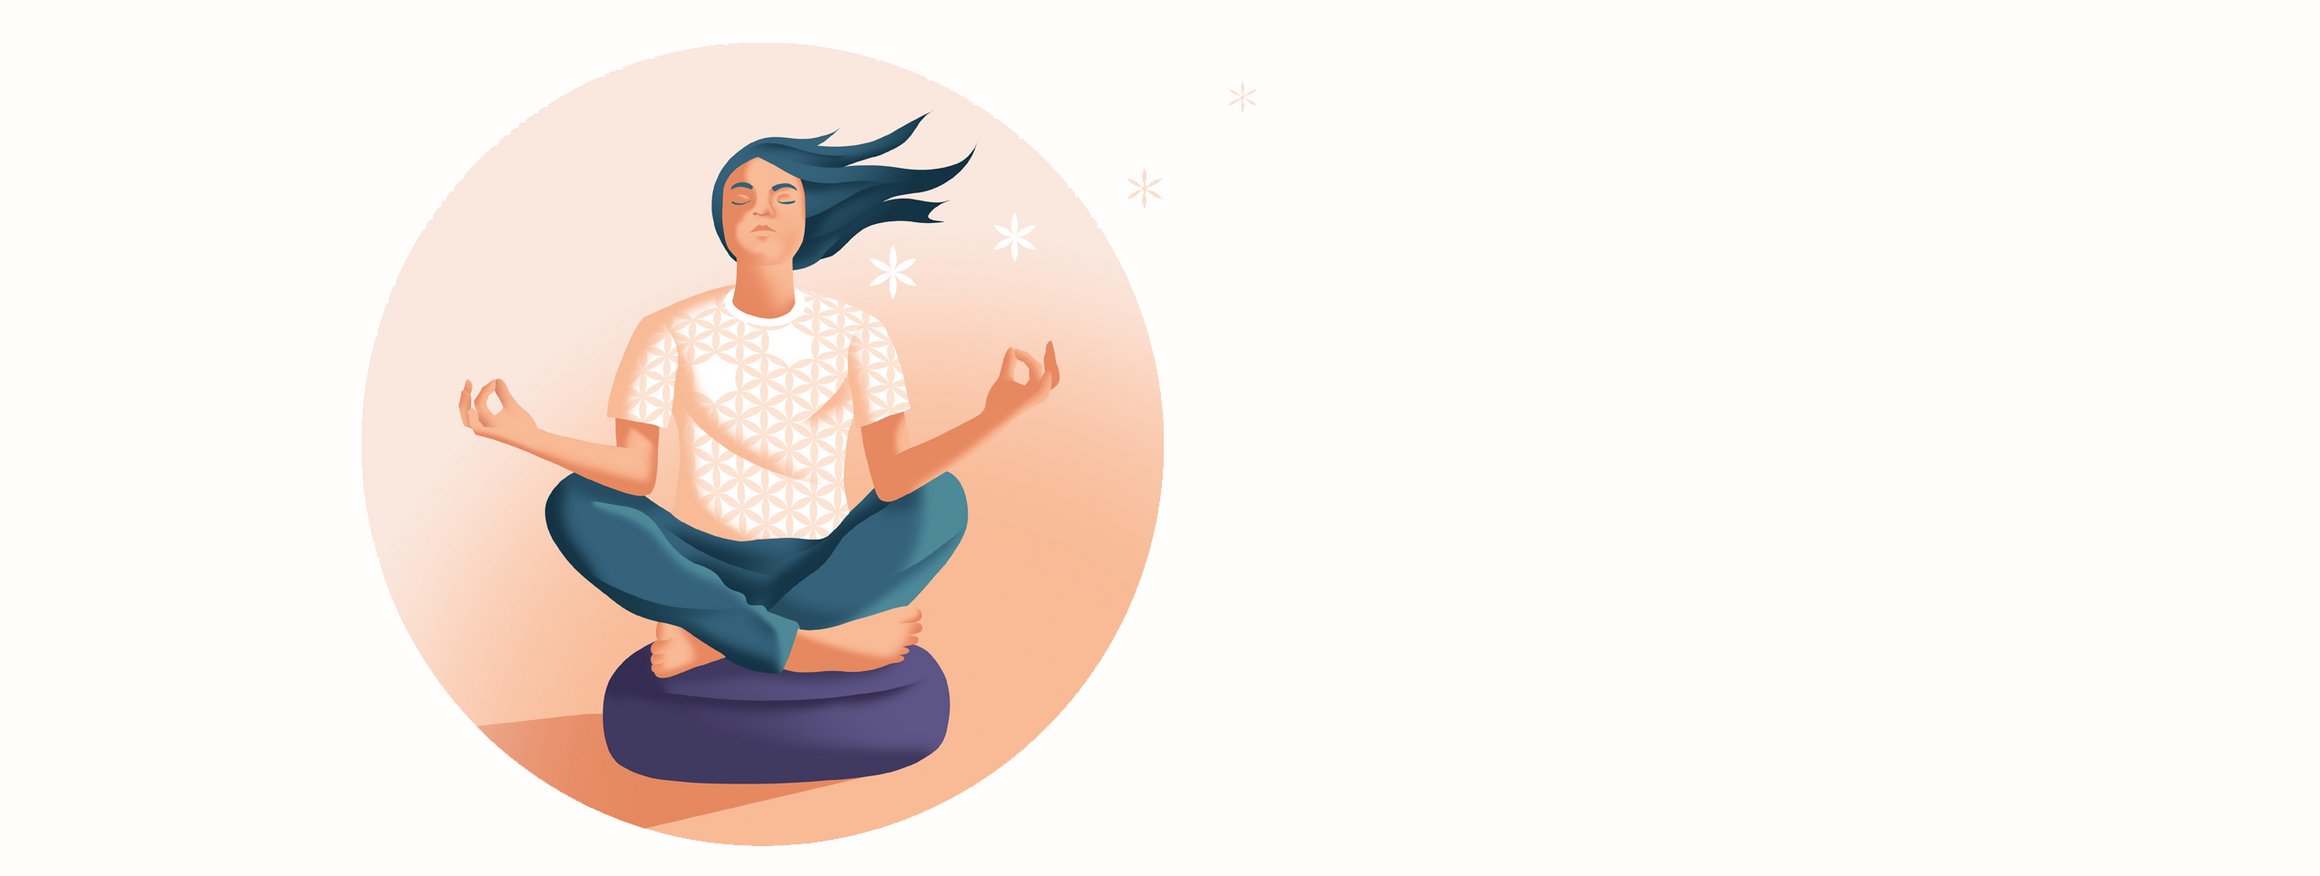 Eine Frau mit wehenden langen Haaren sitzt mit bequemer Kleidung auf einem lila Yogakissen im Schneidersitz und hat die Augen geschlossen und macht mit den Händen das Mudra-Zeichen